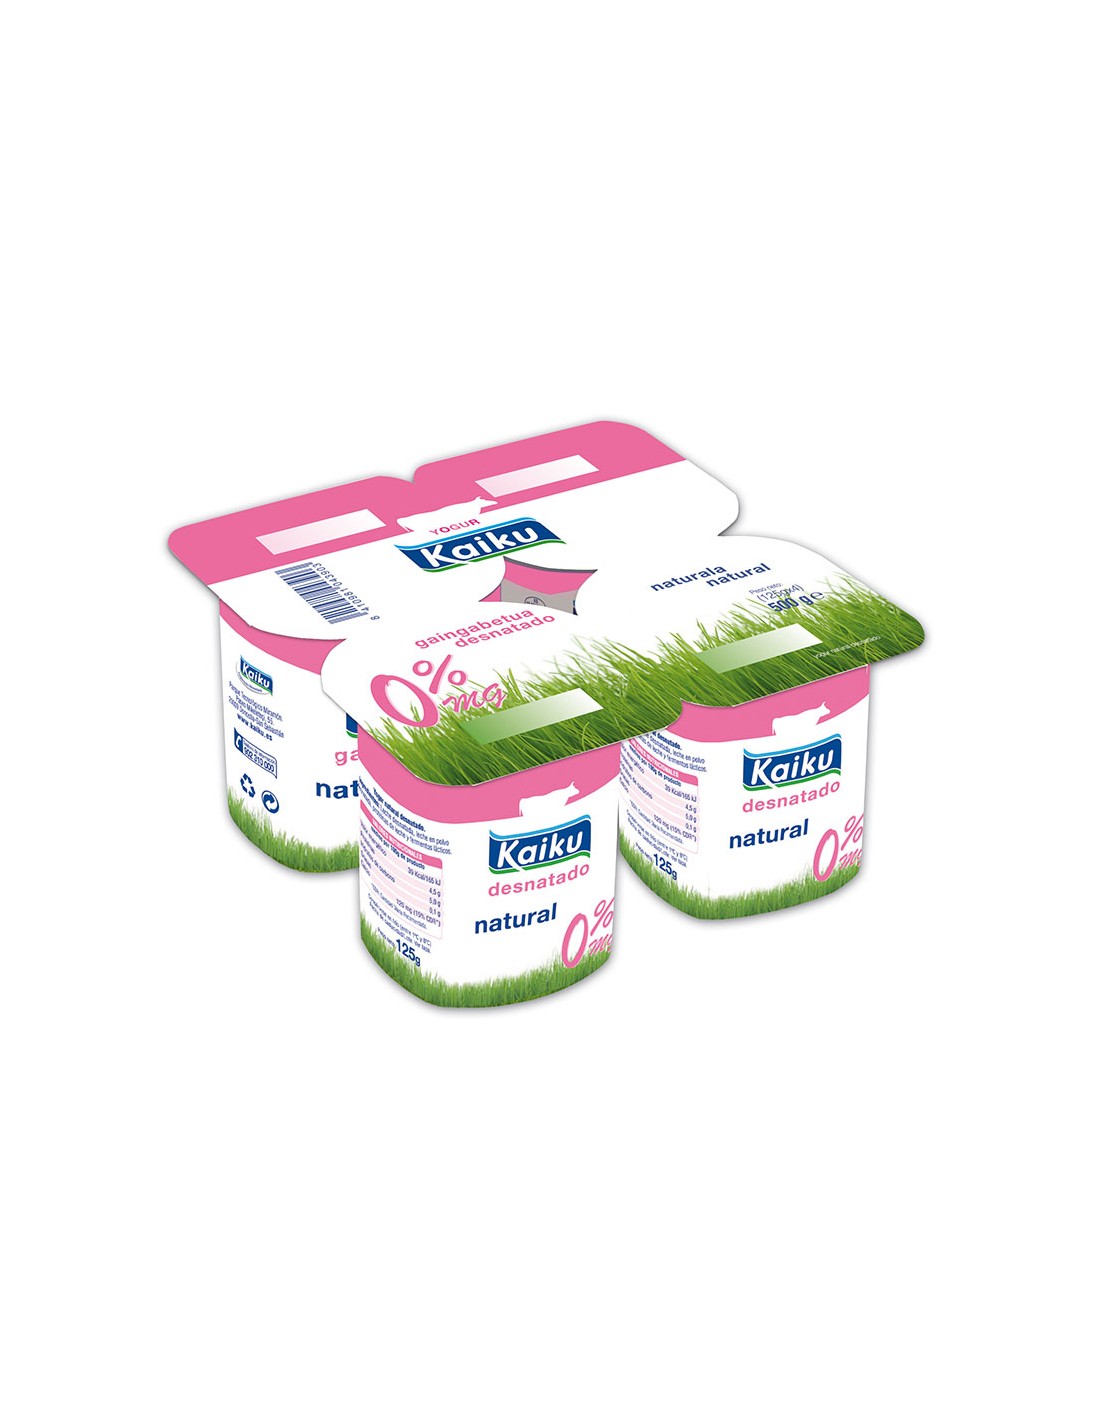 yogur natural pack 4